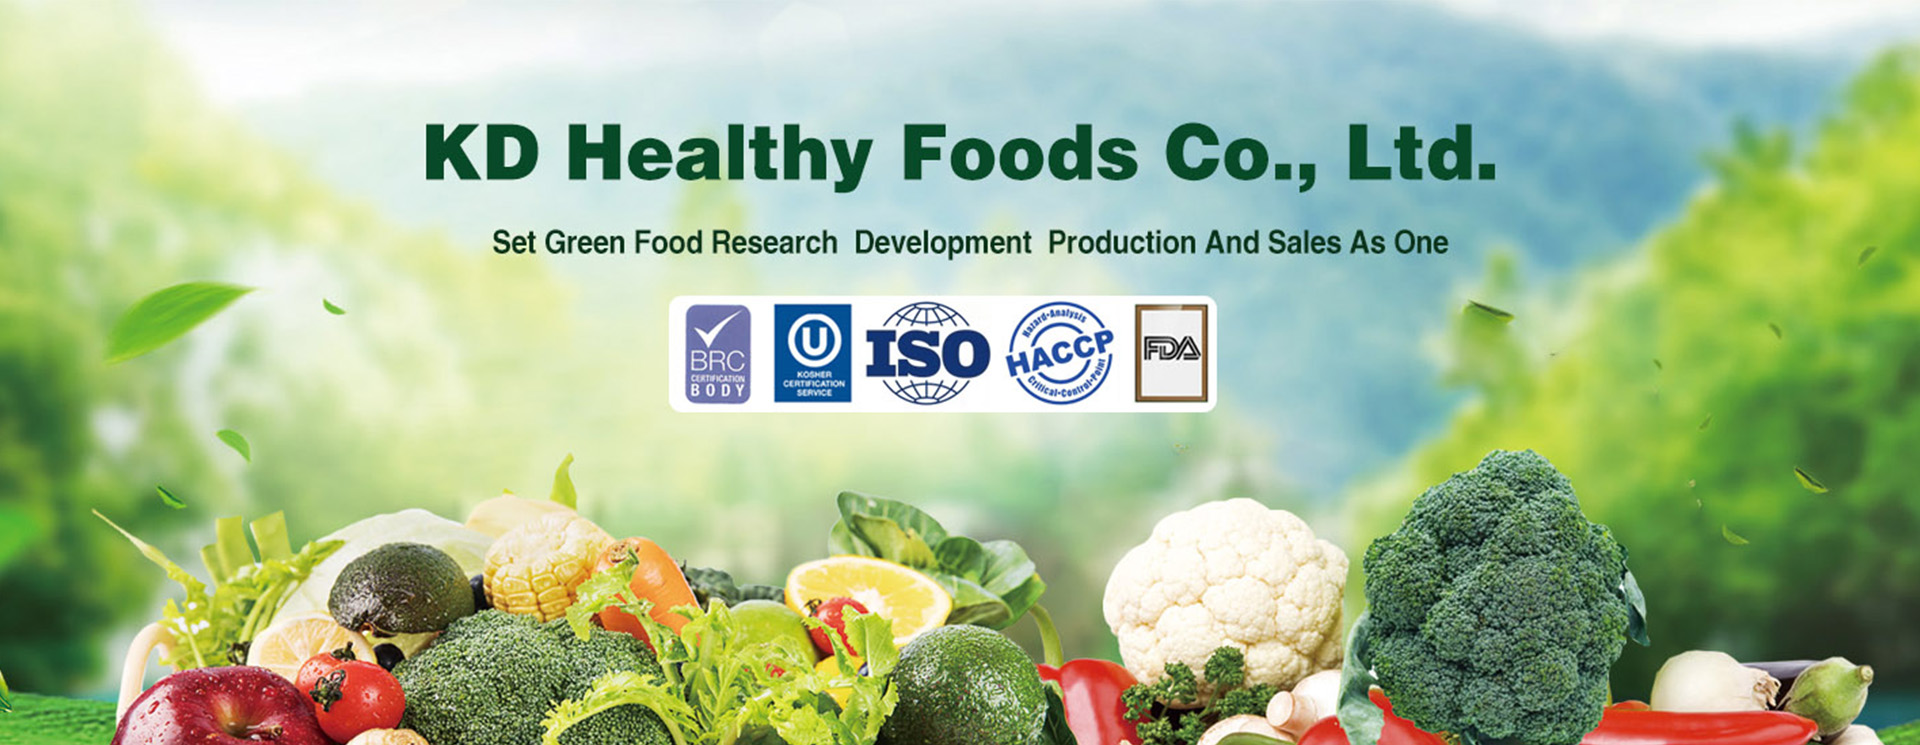 KD HEALTHY FOODS CO., LTD.